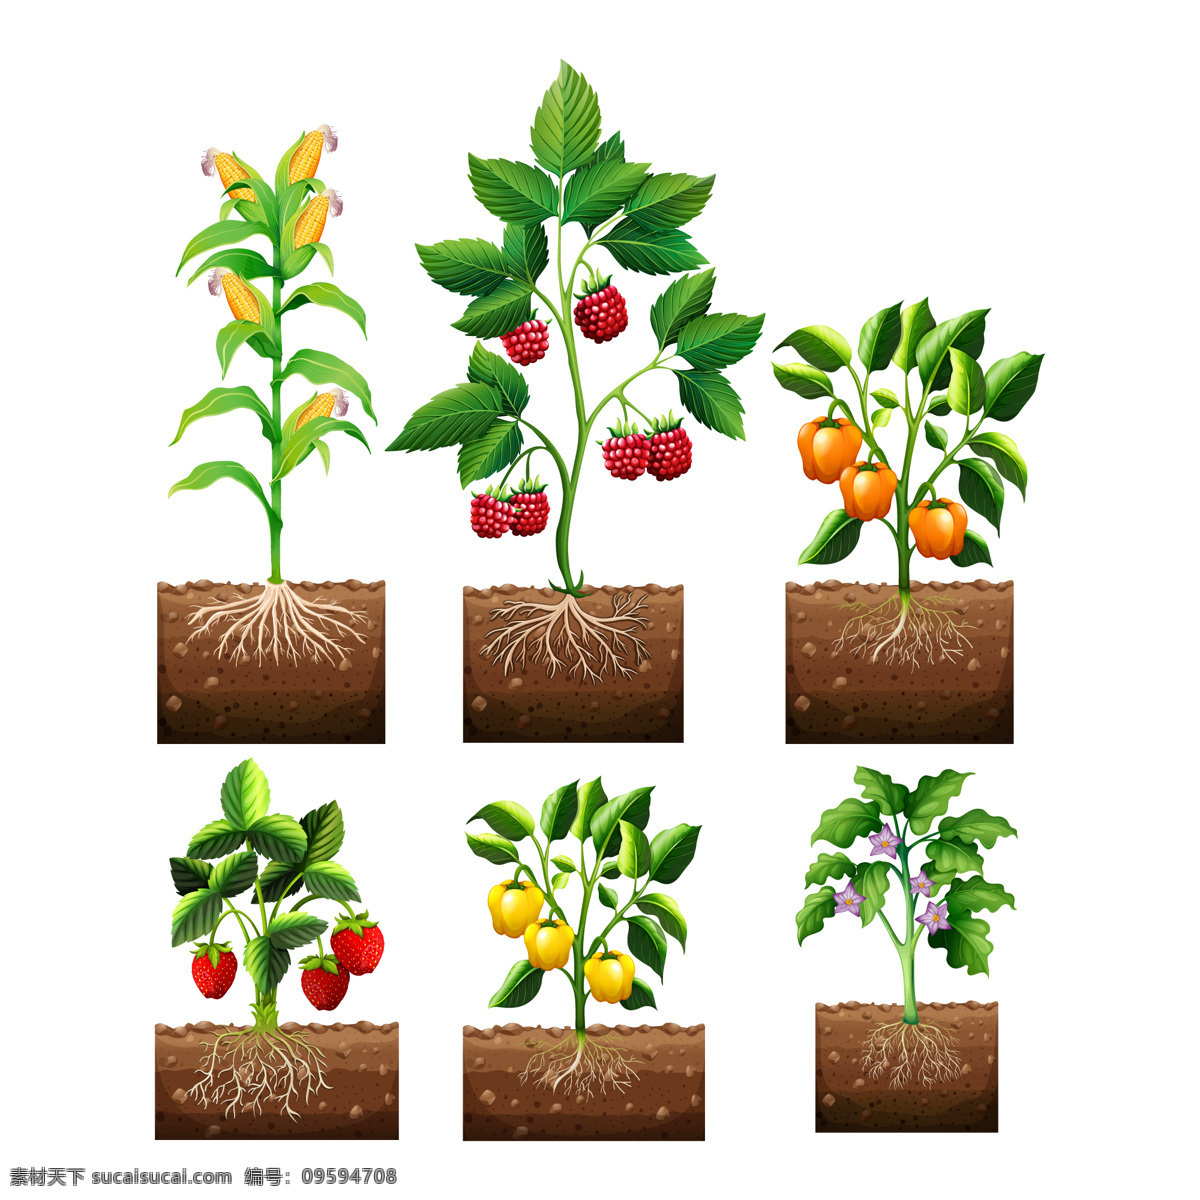 蔬菜水果 收藏 采购产品食物 叶子 水果 颜色 树叶 蔬菜 草莓 玉米 胡椒粉 浆果 收集 彩色的 有色的